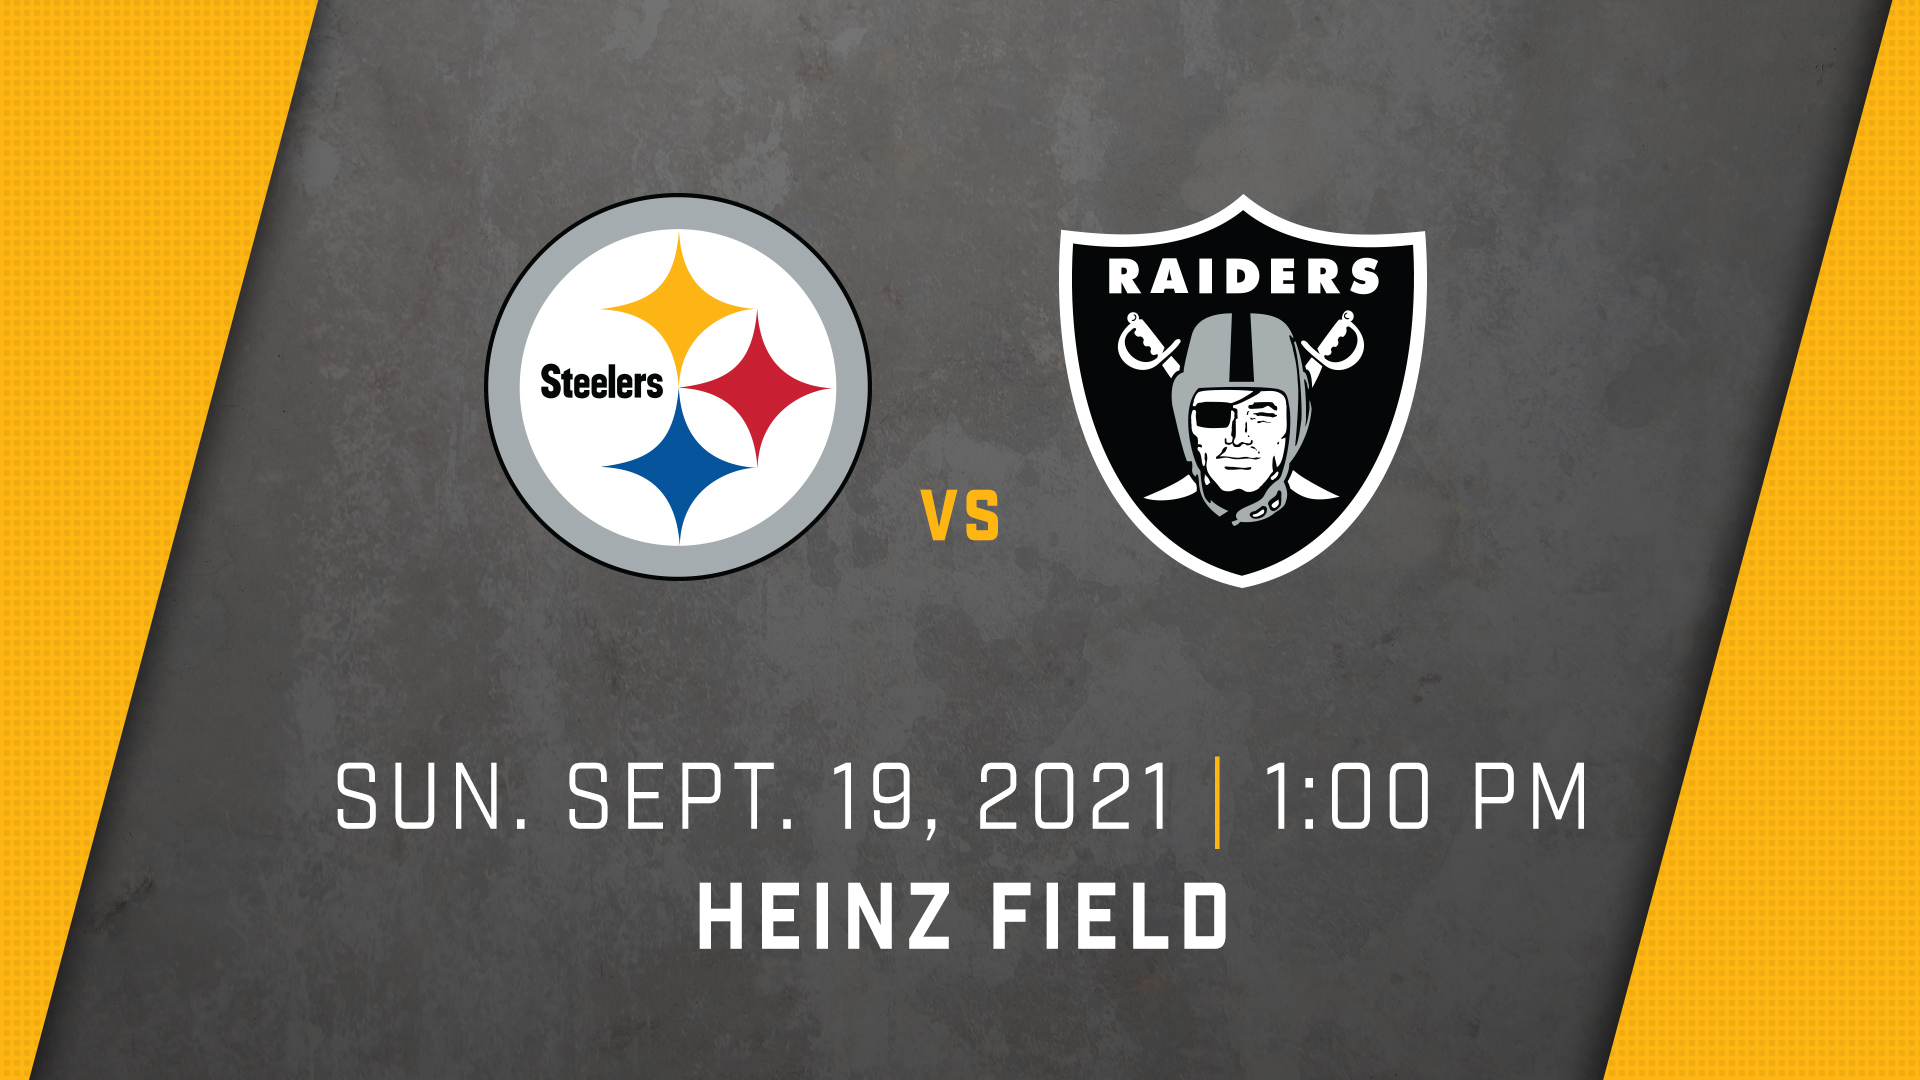 Pittsburgh Steelers vs. Las Vegas Raiders 2021 Regular Season Heinz